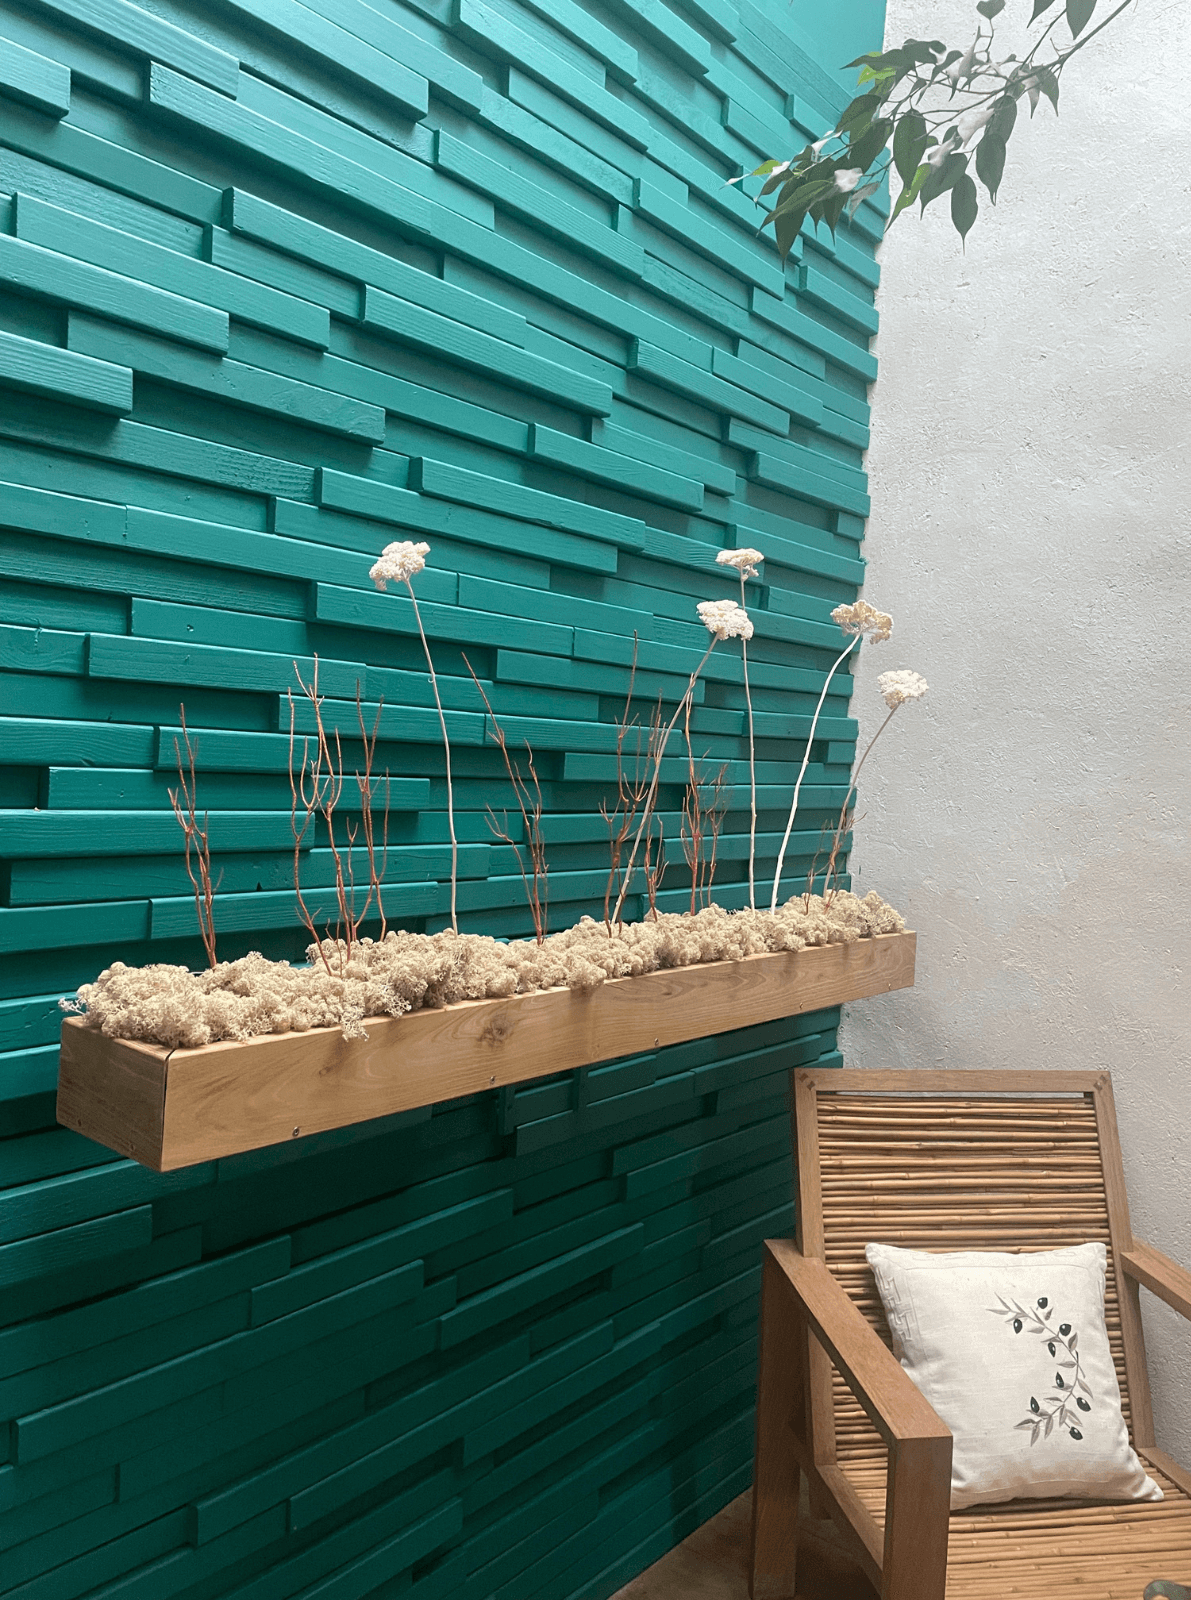 Décoration intérieure au design floral en lichen stabilisé et plantes naturelles stabilisées dans une maison contemporaine. Composition en végétaux stabilisés accroché à un mur turquoise en bois, avec une chaise en bambou.